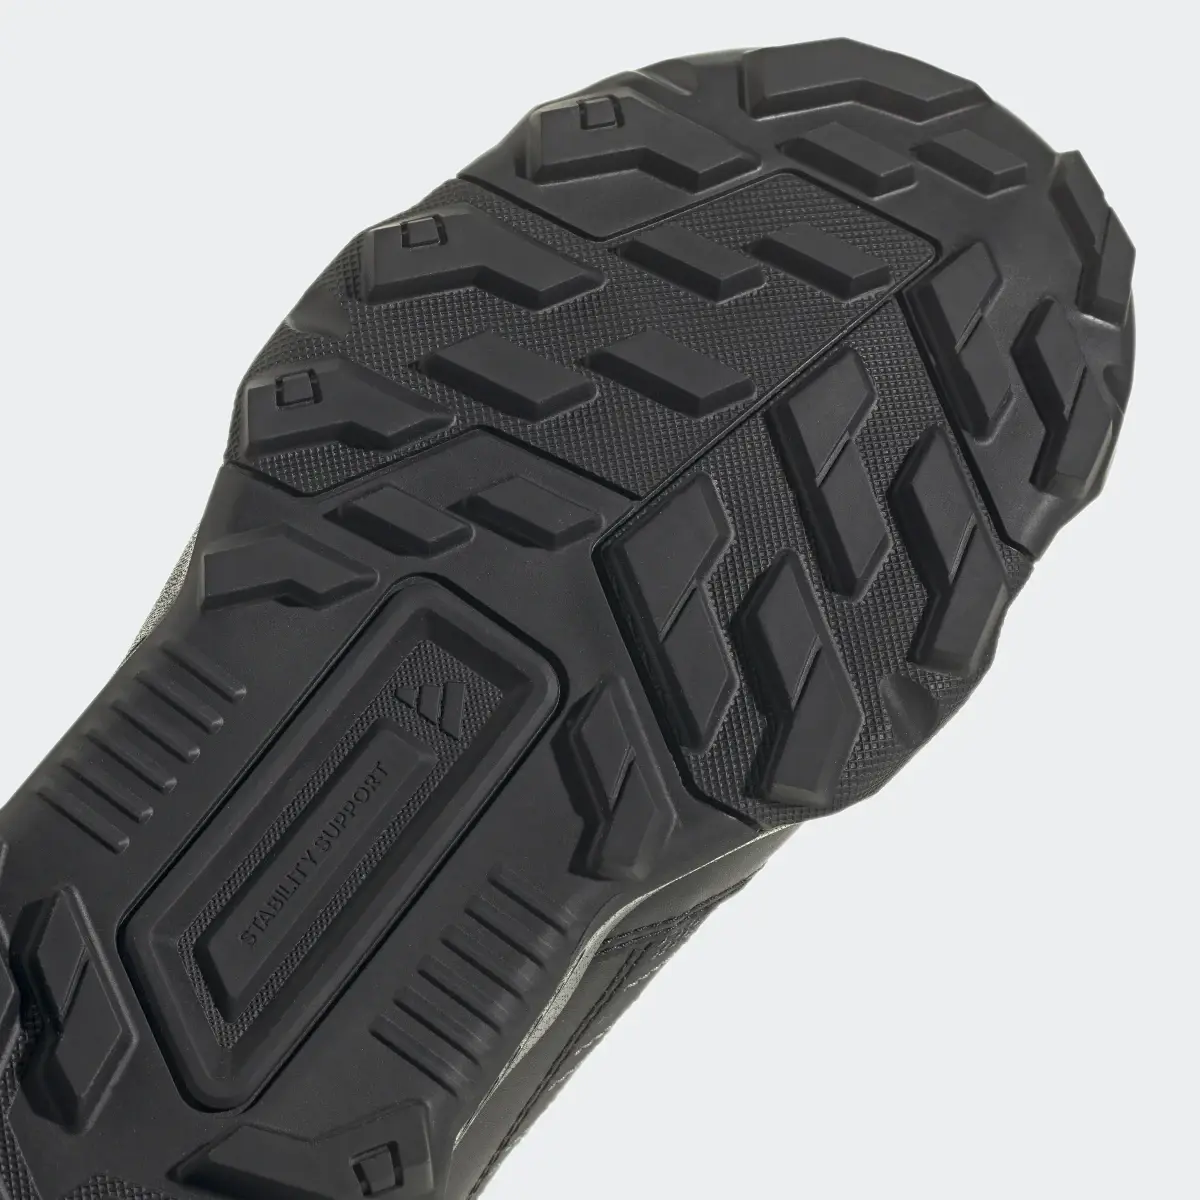 Adidas Unity Leather Hiking Shoes. 3